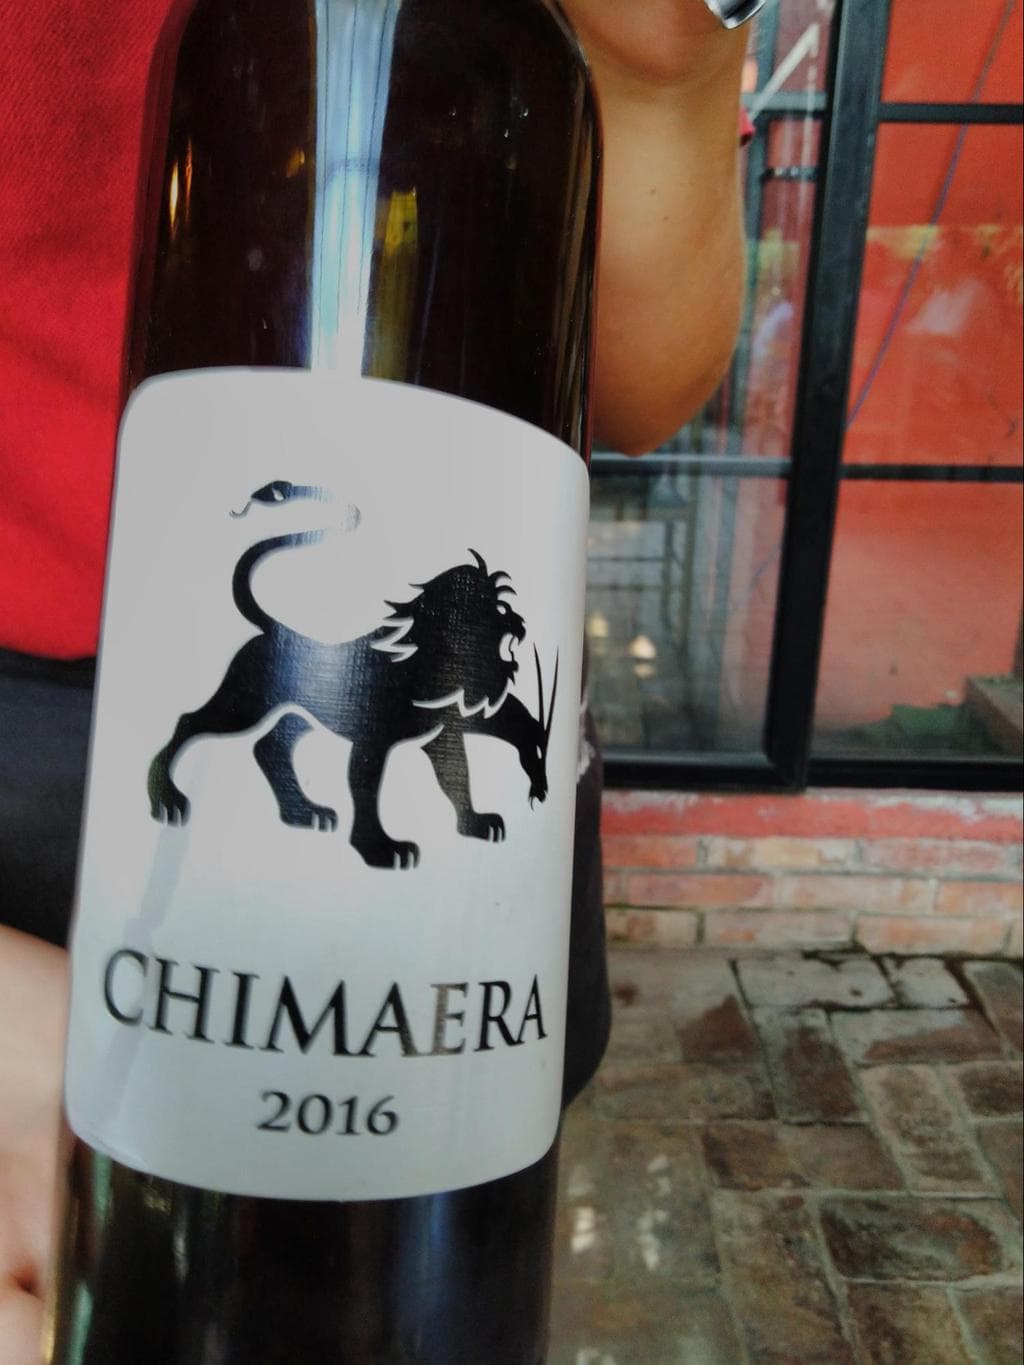 Chimaera wine from Uka